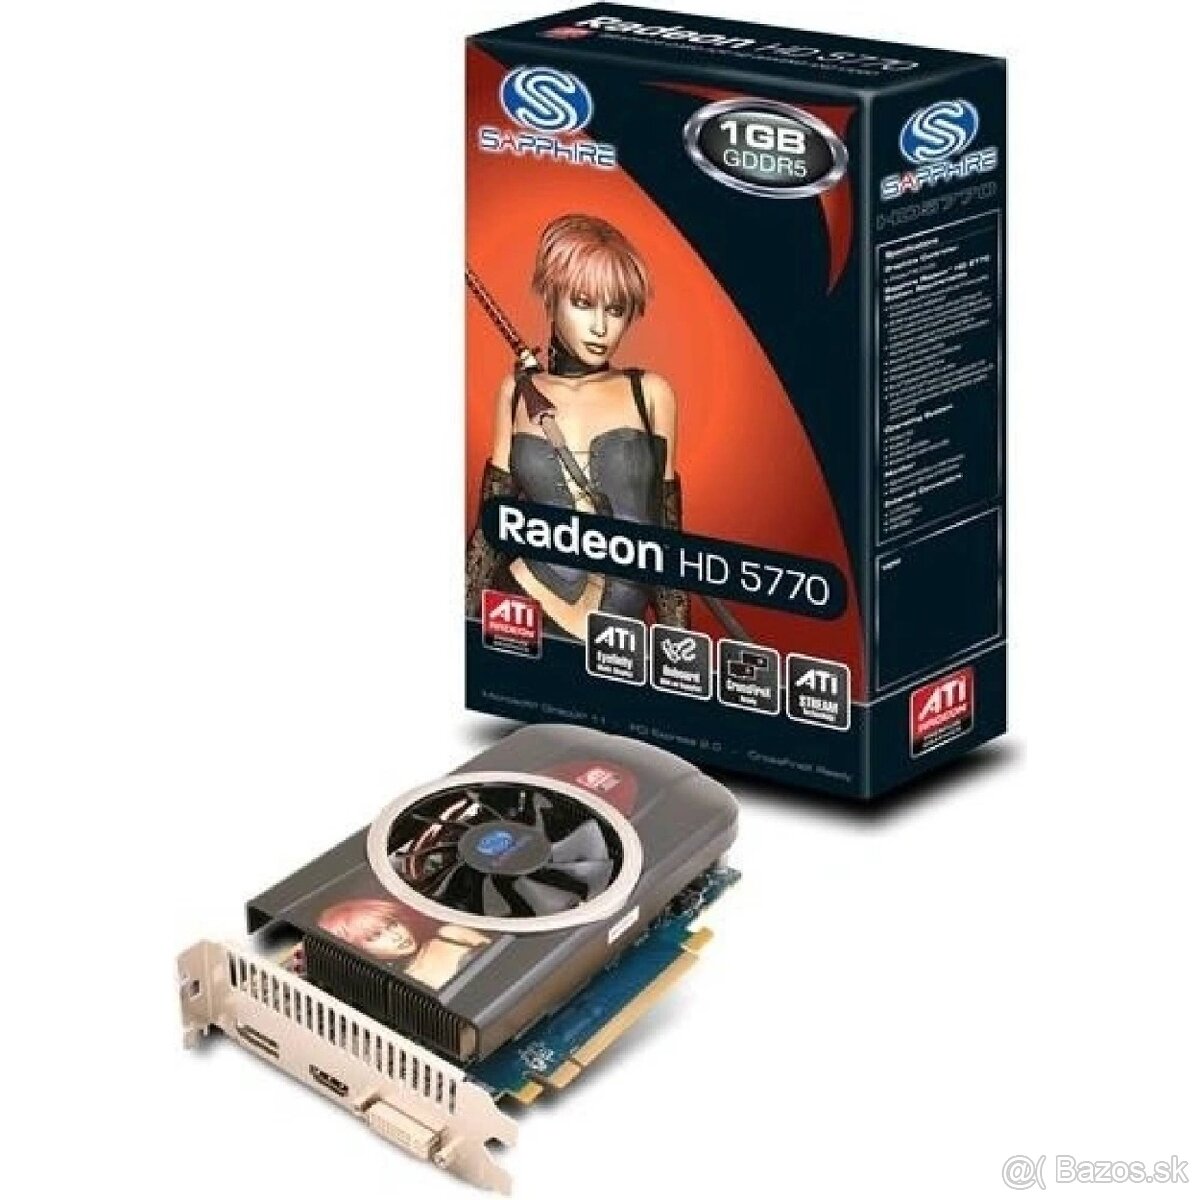 Ati Radeon HD 5770